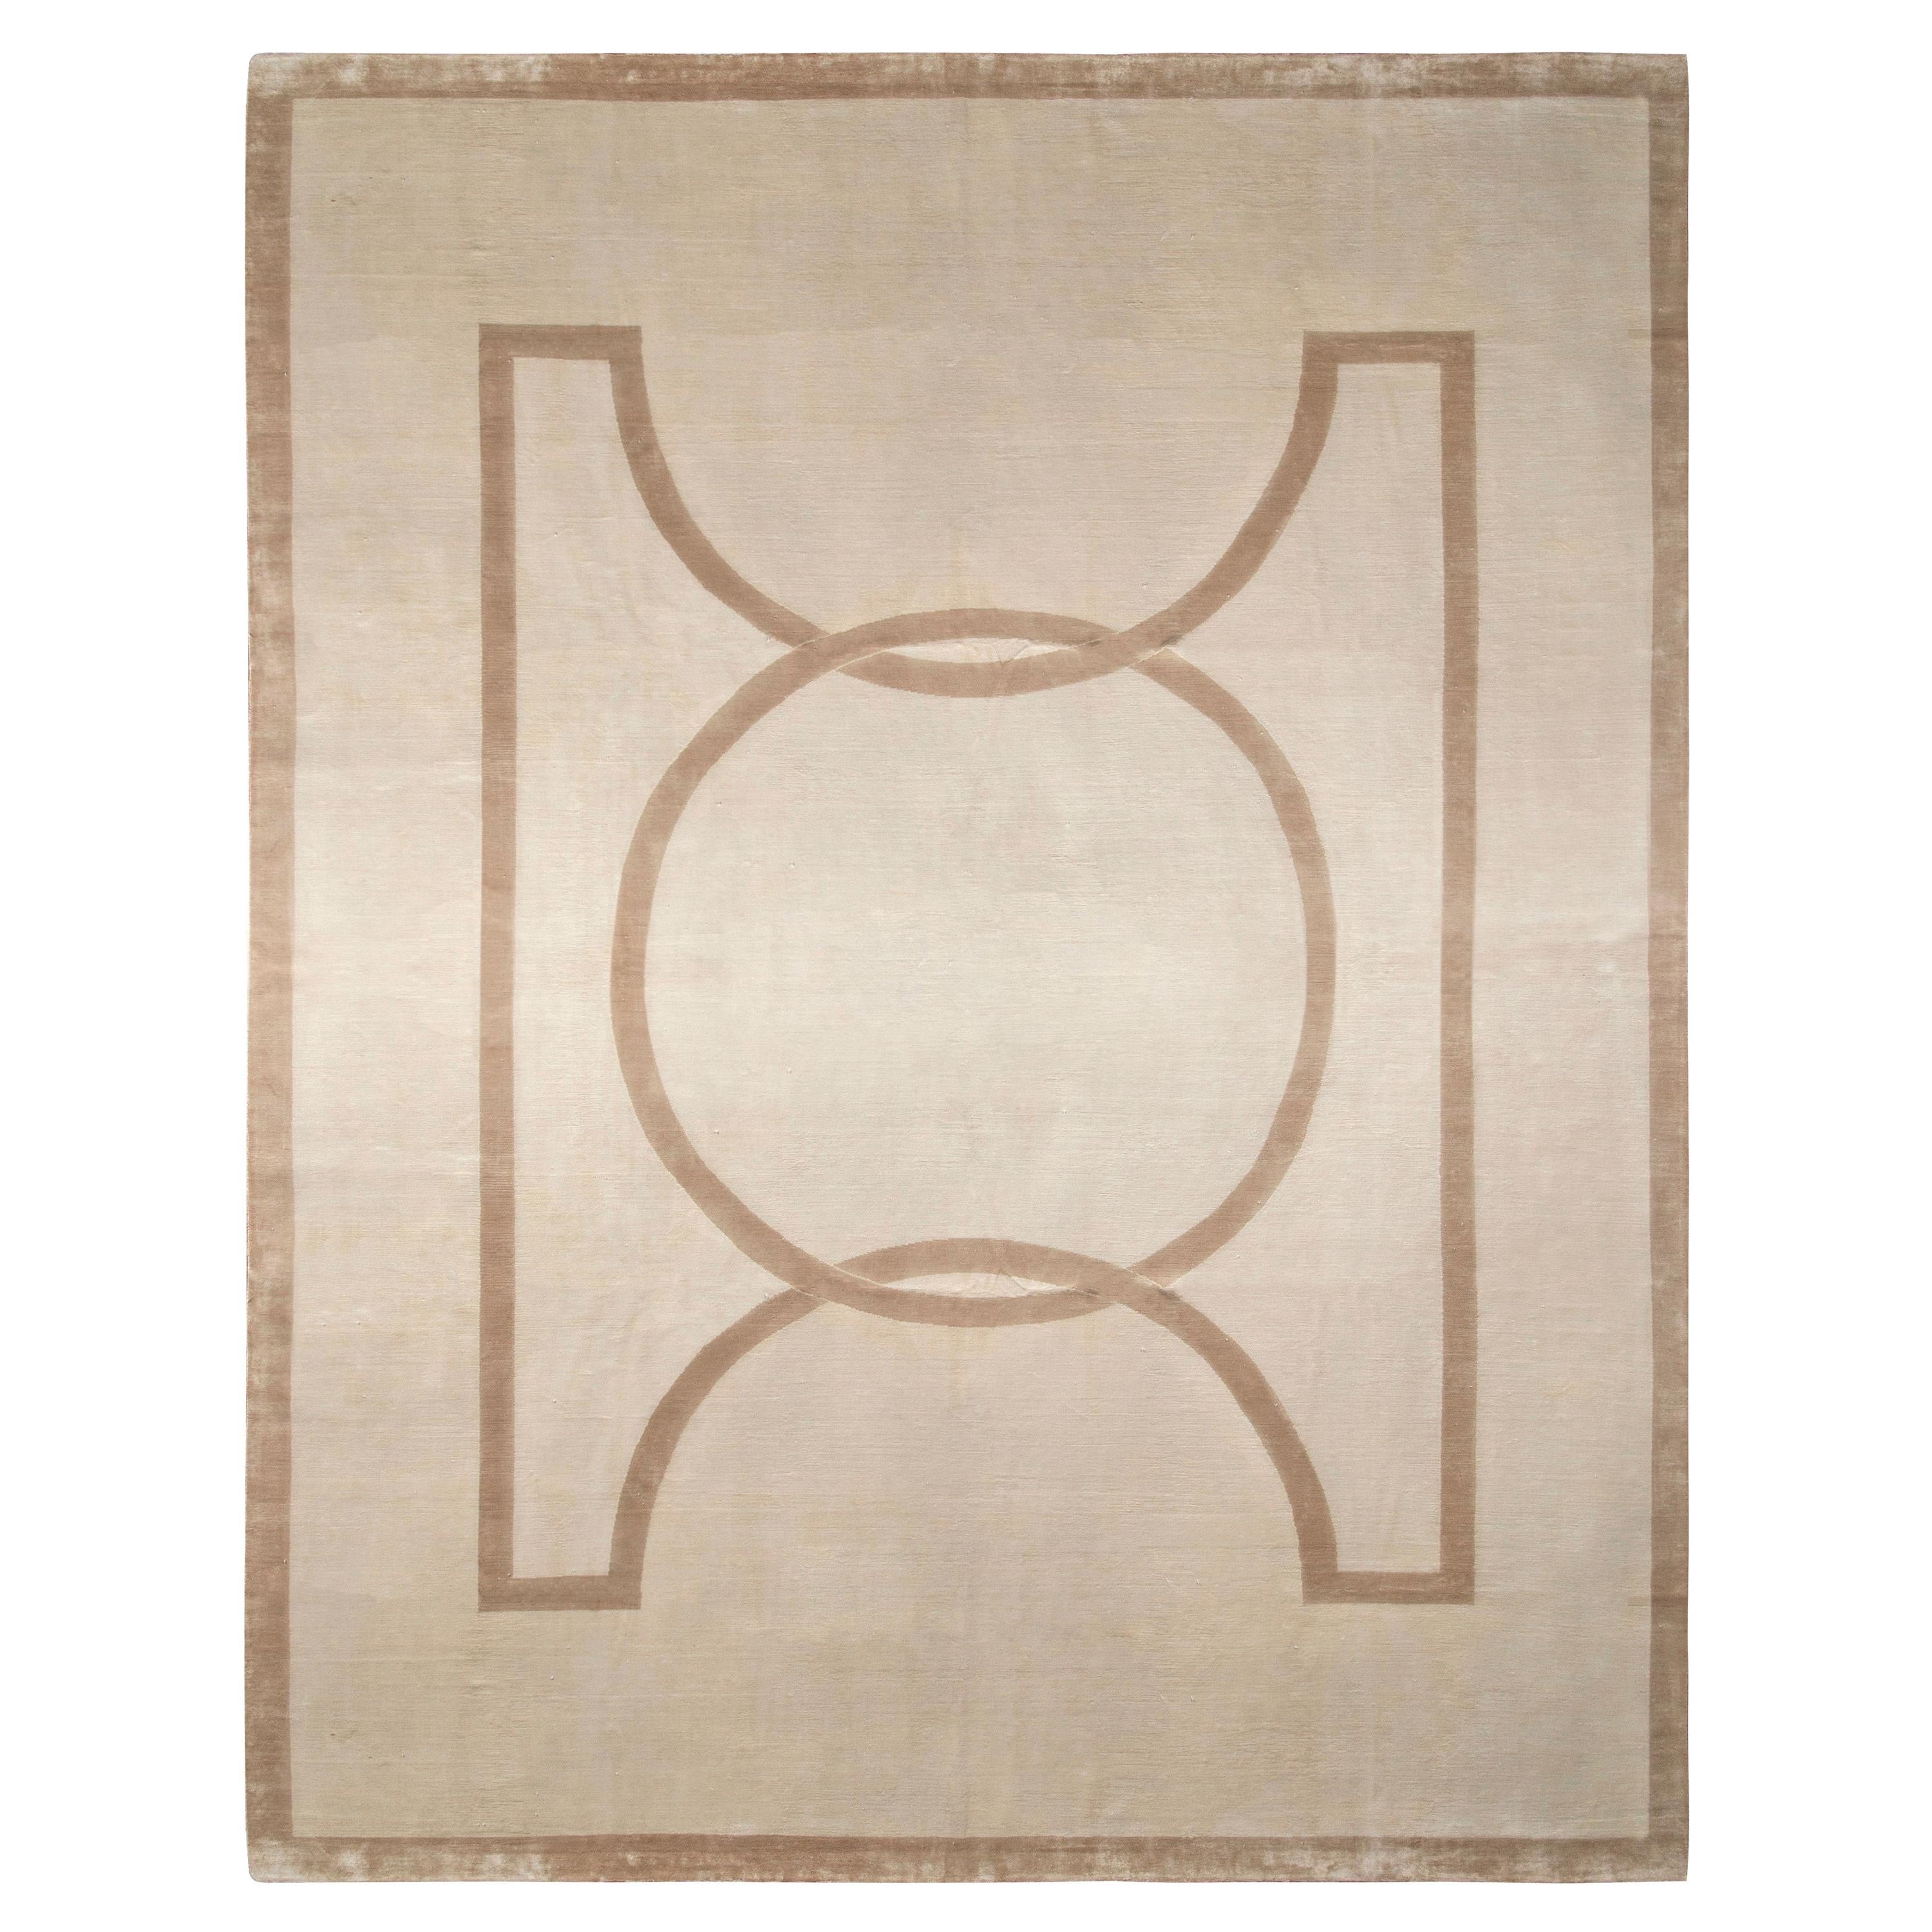 Rug & Kilim’s Art Deco Style Custom Rug in Gray, Beige-Brown Geometric Pattern